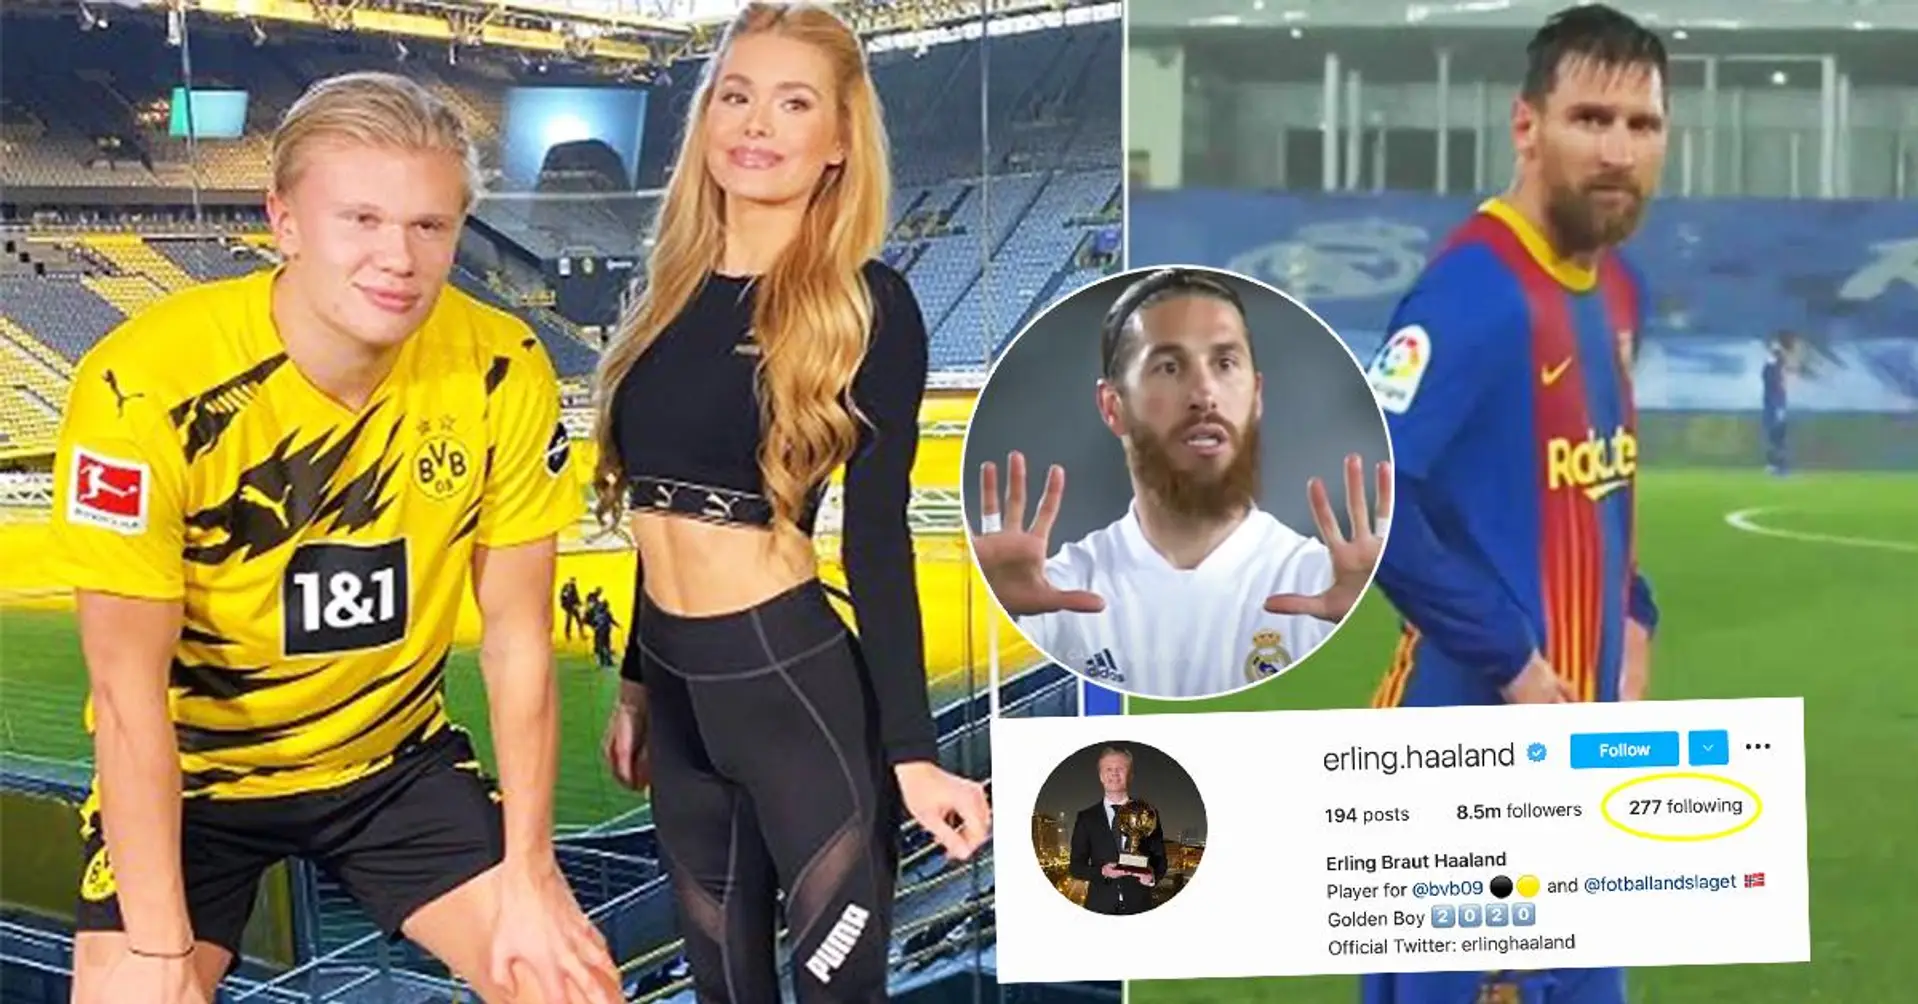 "Hinweis auf zukünftigen Transfer"? Top-Fußballer, denen Erling Haaland auf Instagram folgt